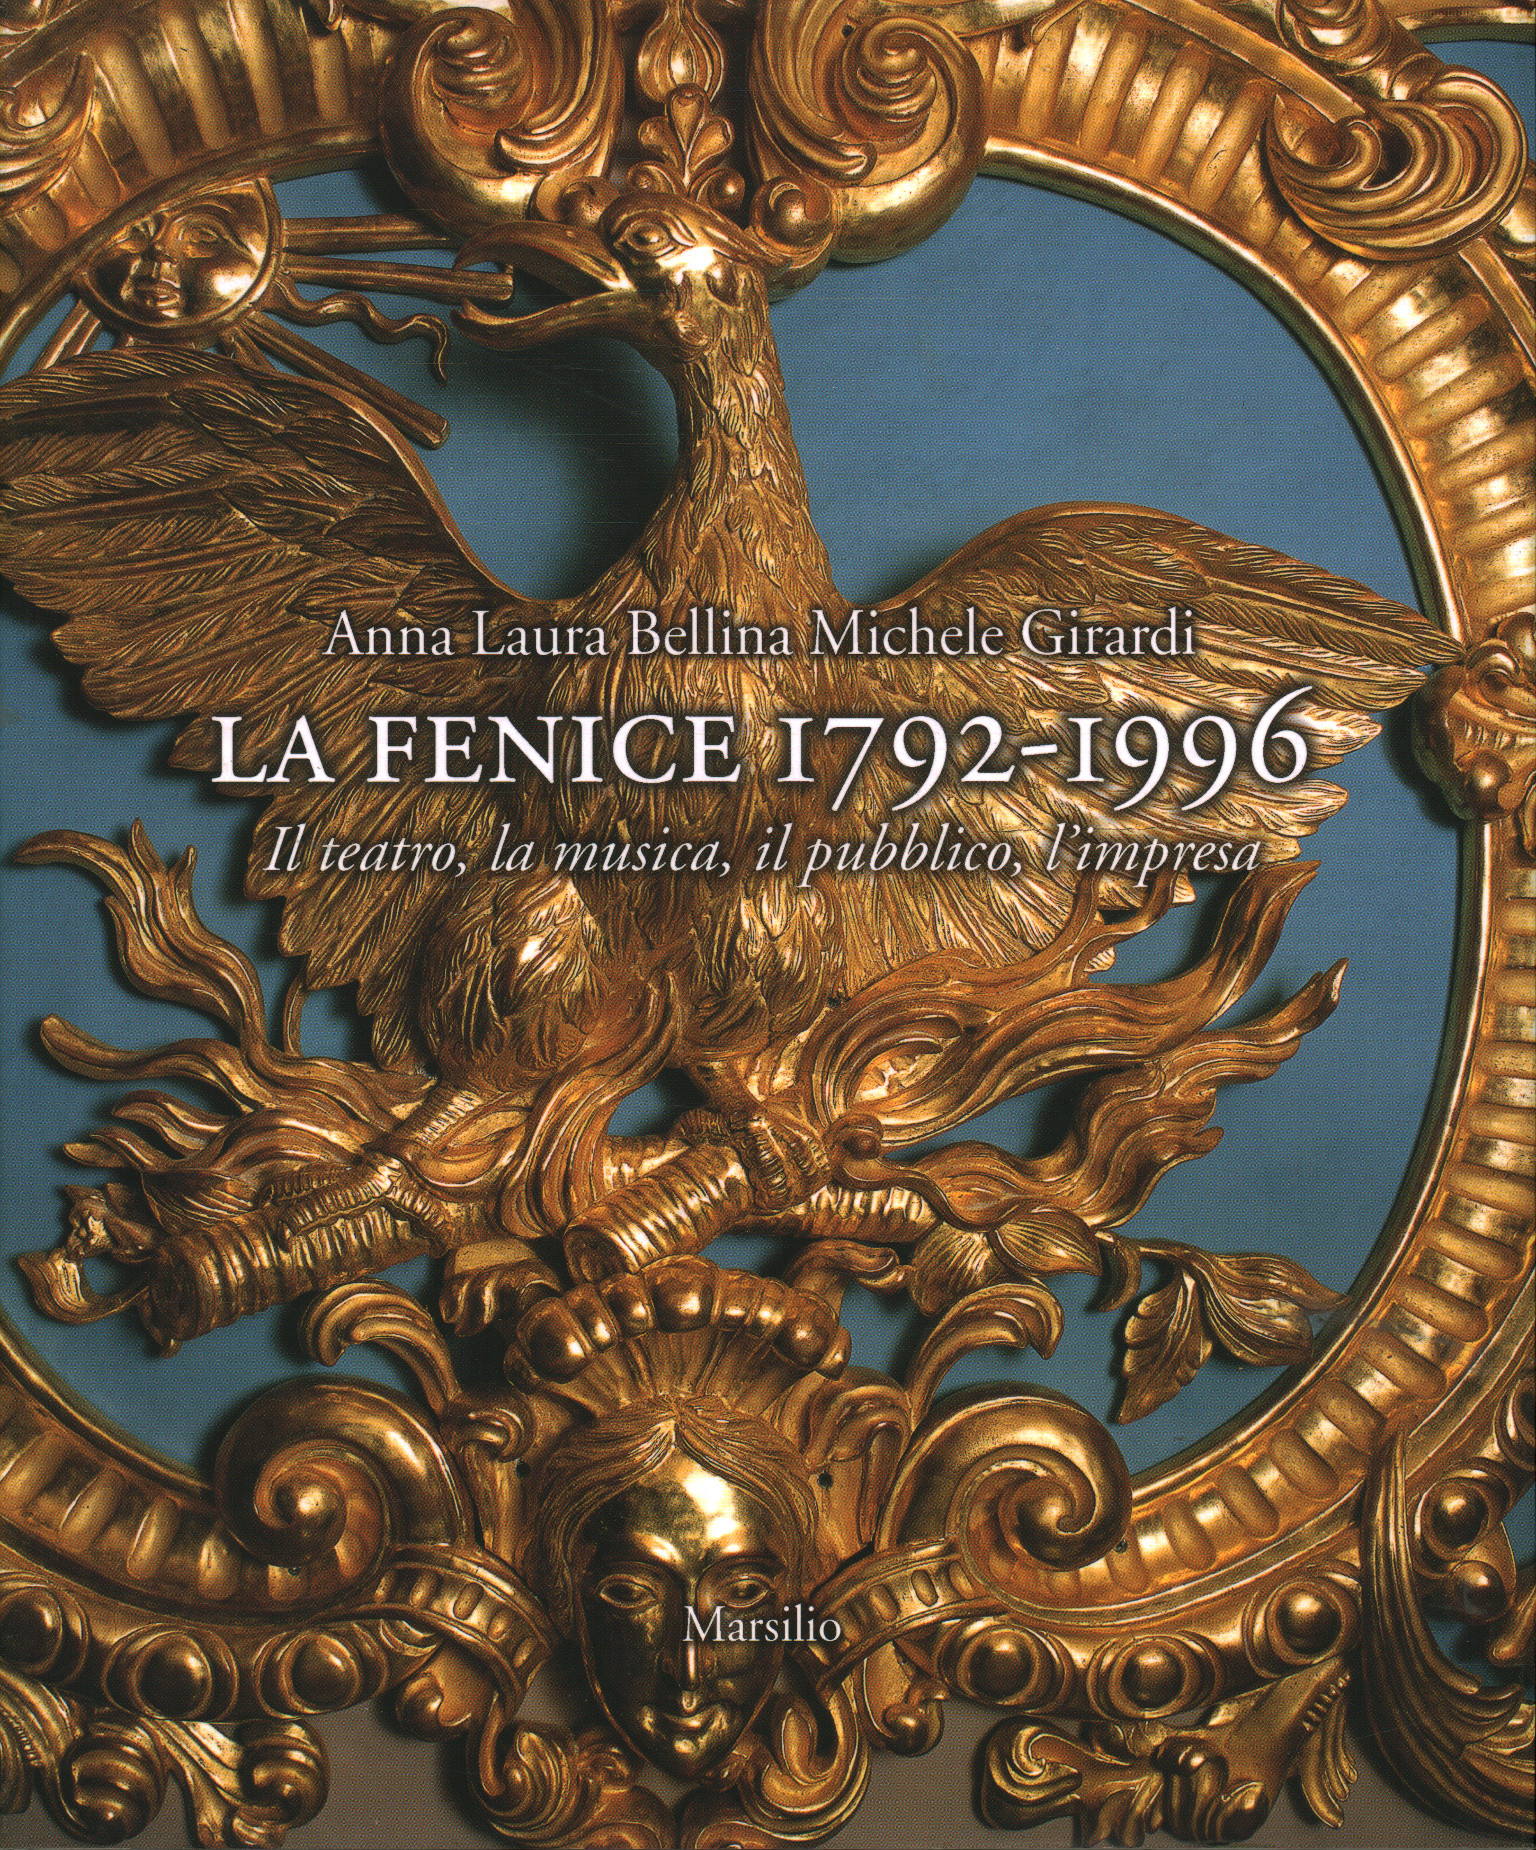 La Fenice 1792-1996, Anna Laura Nettes Michele Girardi